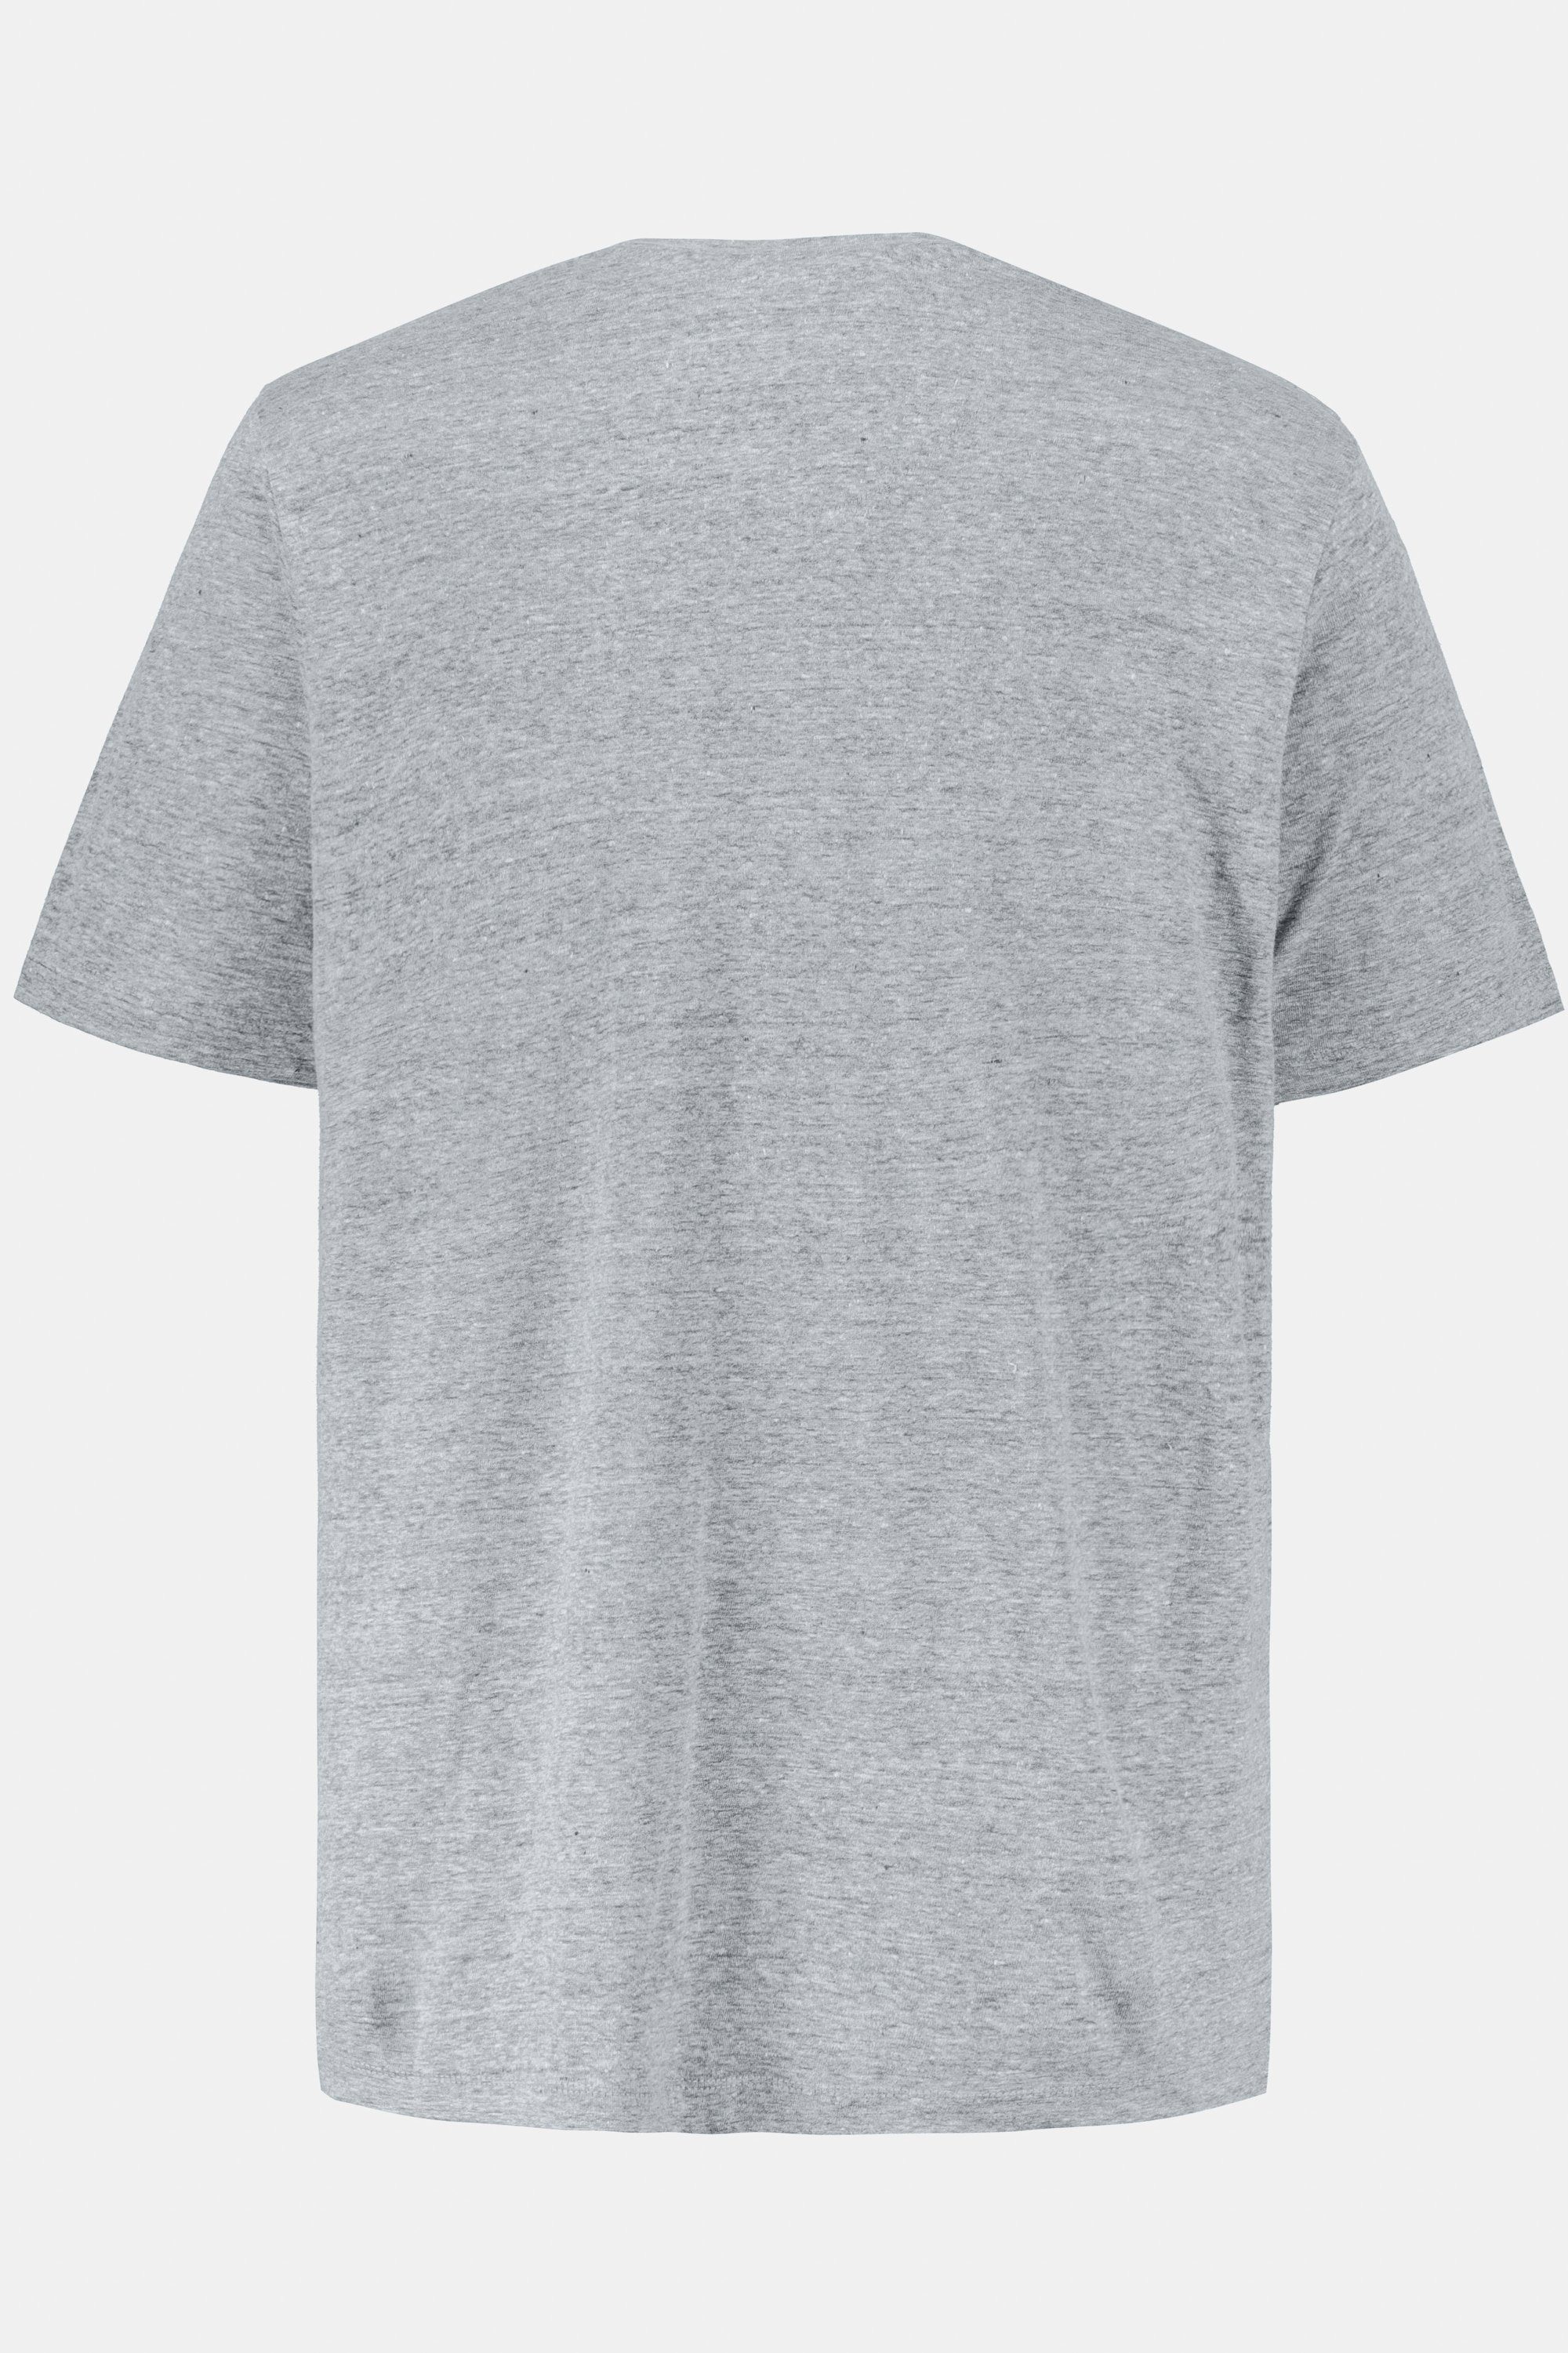 JP1880 T-Shirt T-Shirt bis melange V-Ausschnitt 8XL grau Basic